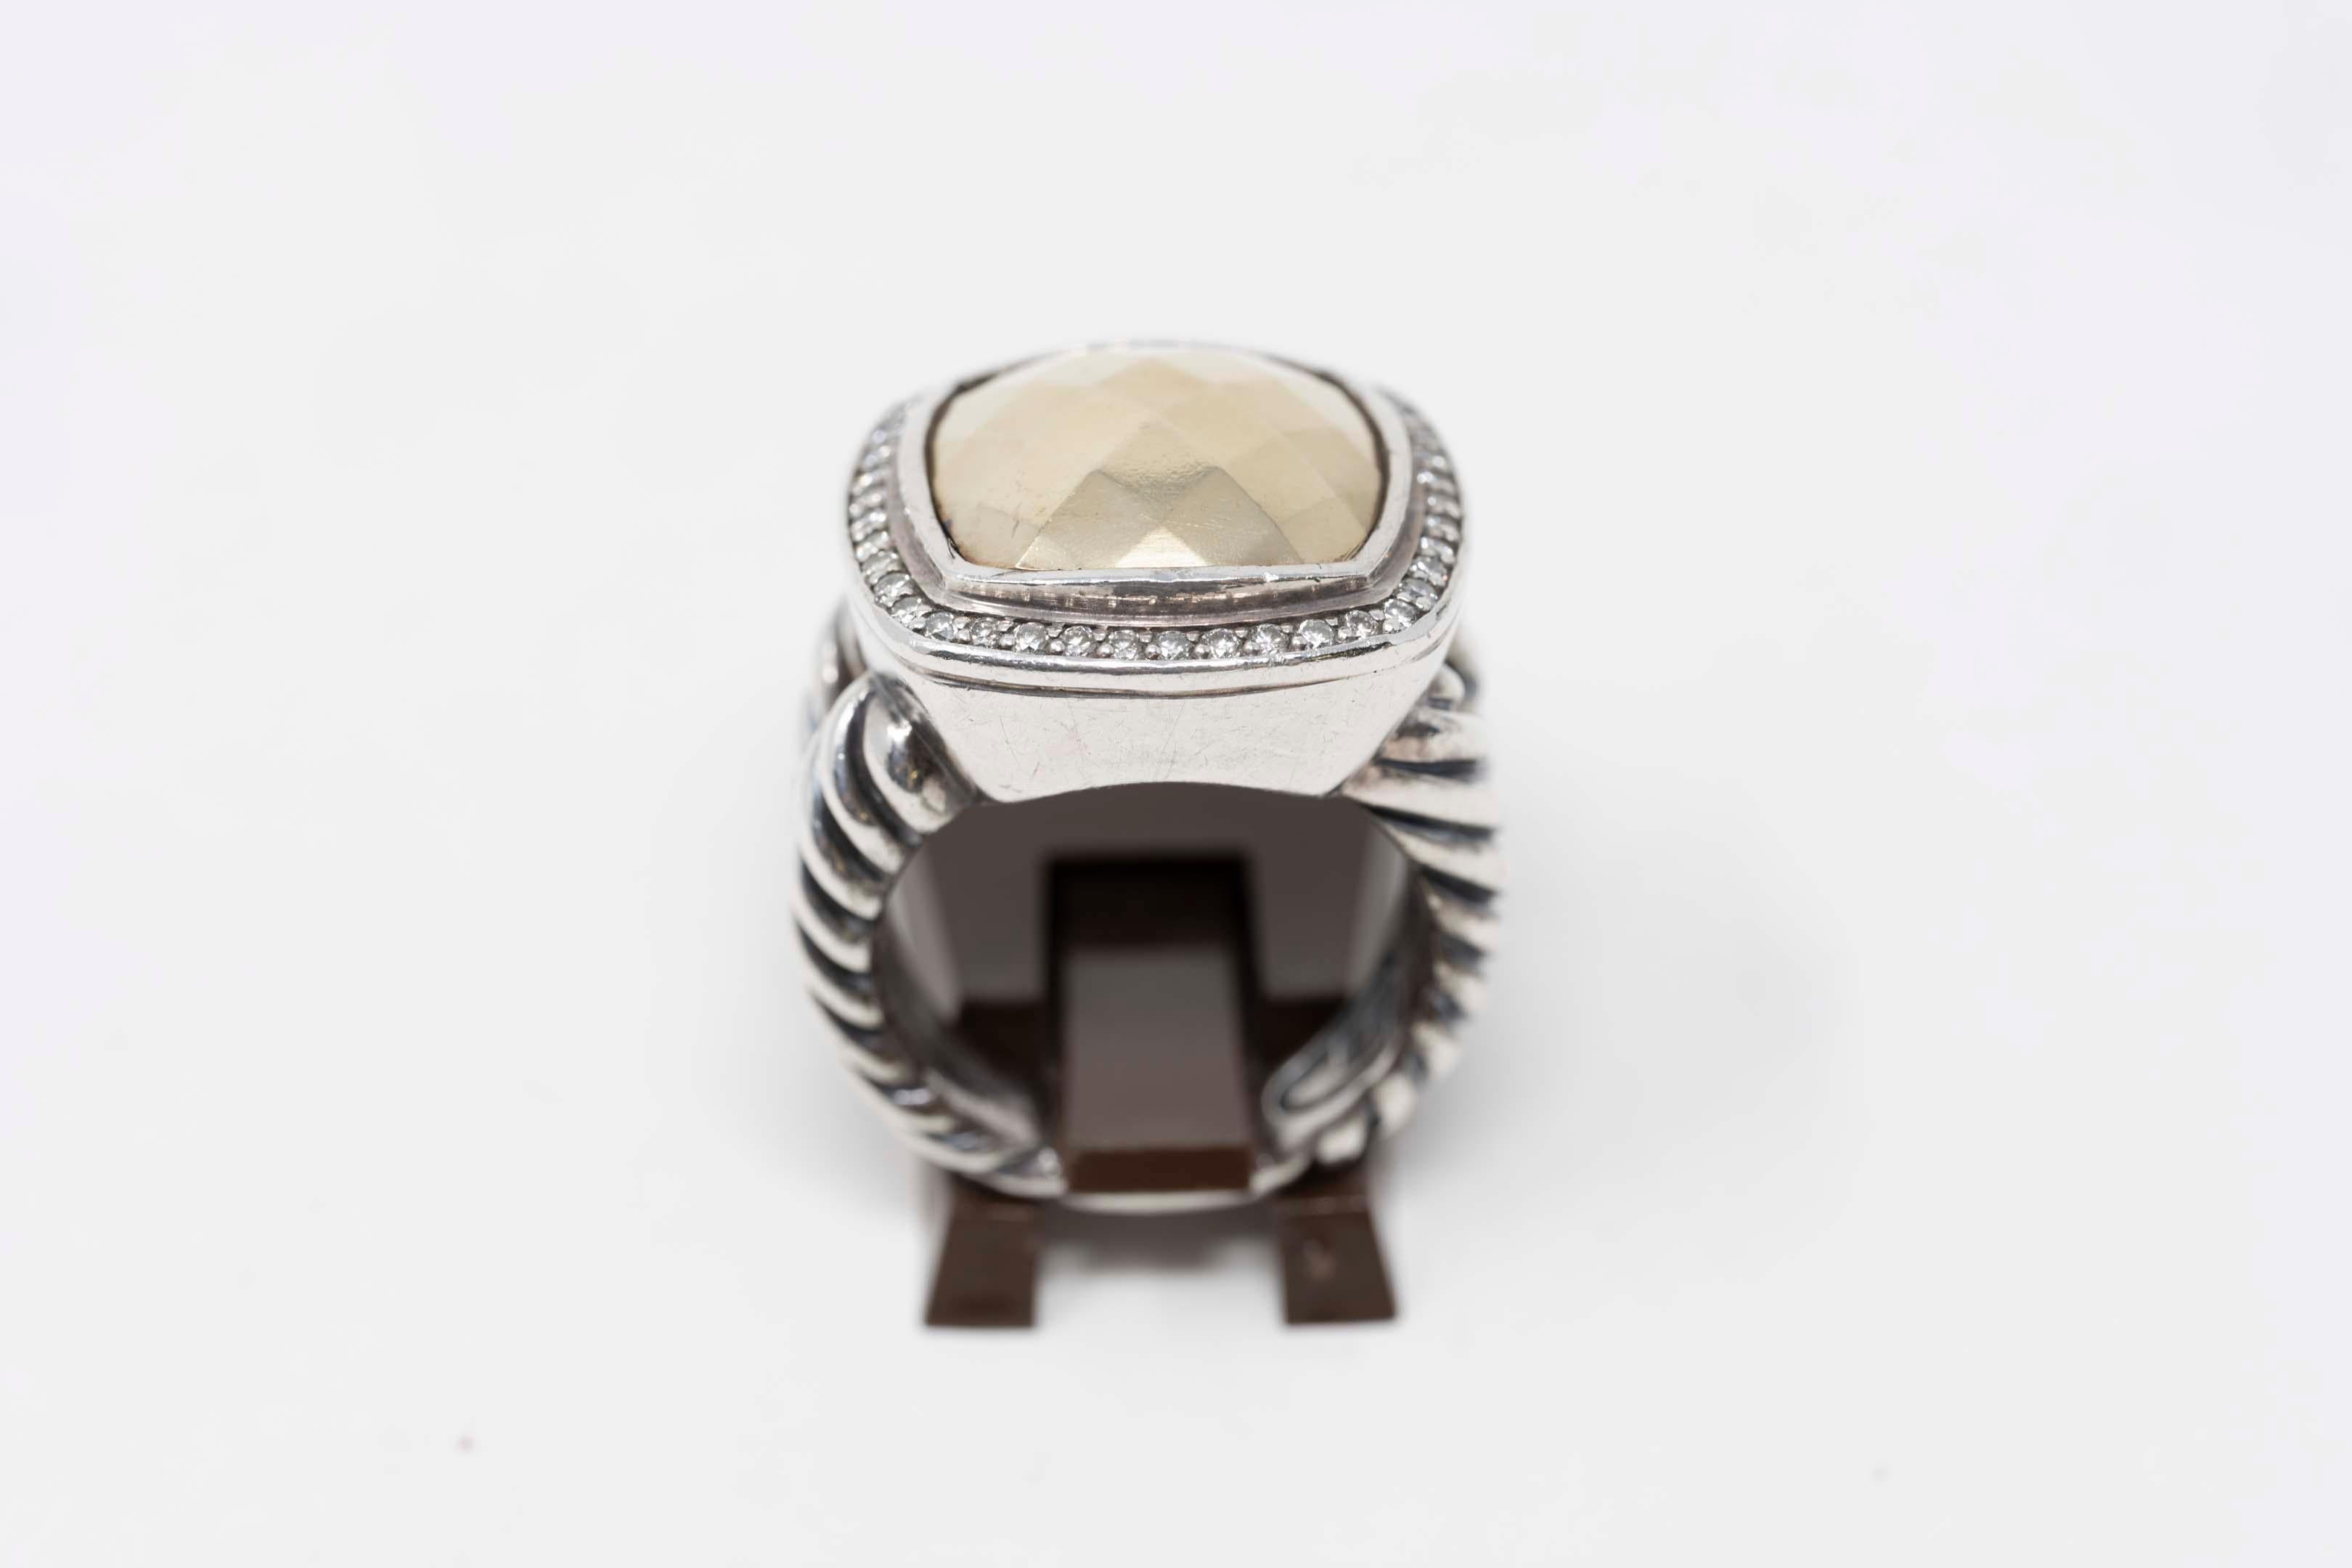 Brilliant Cut David Yurman Gold Dome Ring Diamonds Silver & 18k Gold For Sale